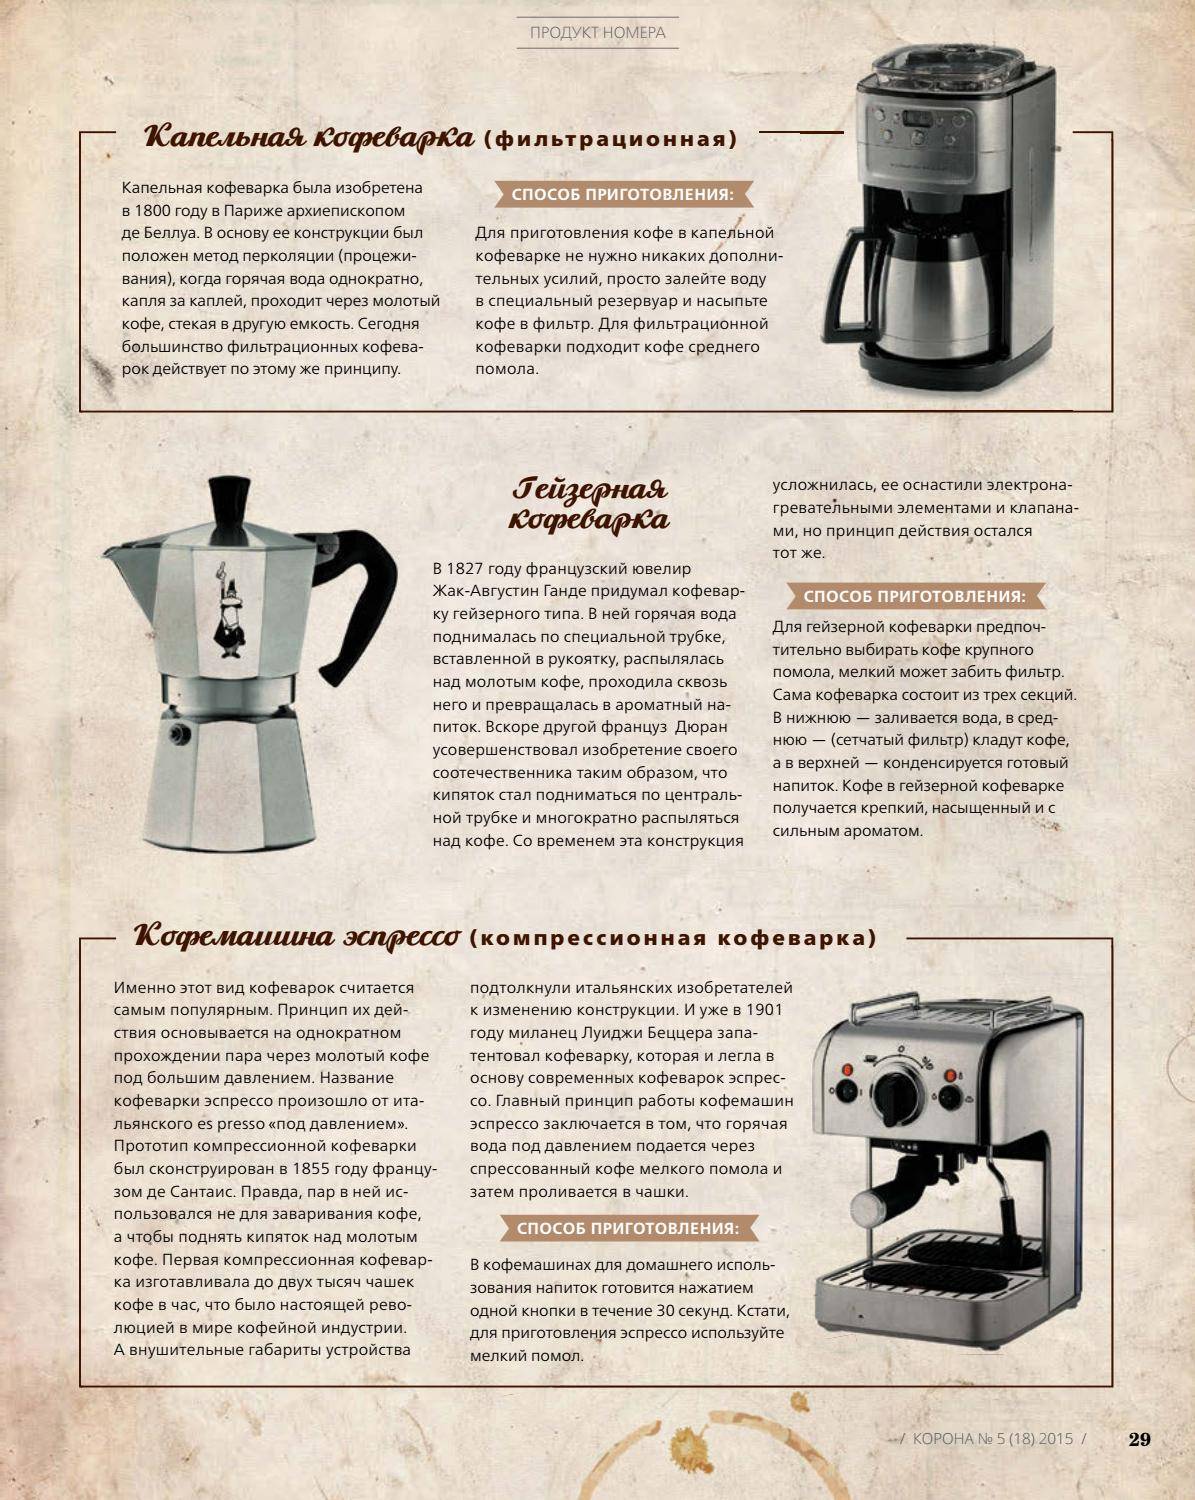 Как выбрать и пользоваться рожковой кофеваркой (кофемашиной)